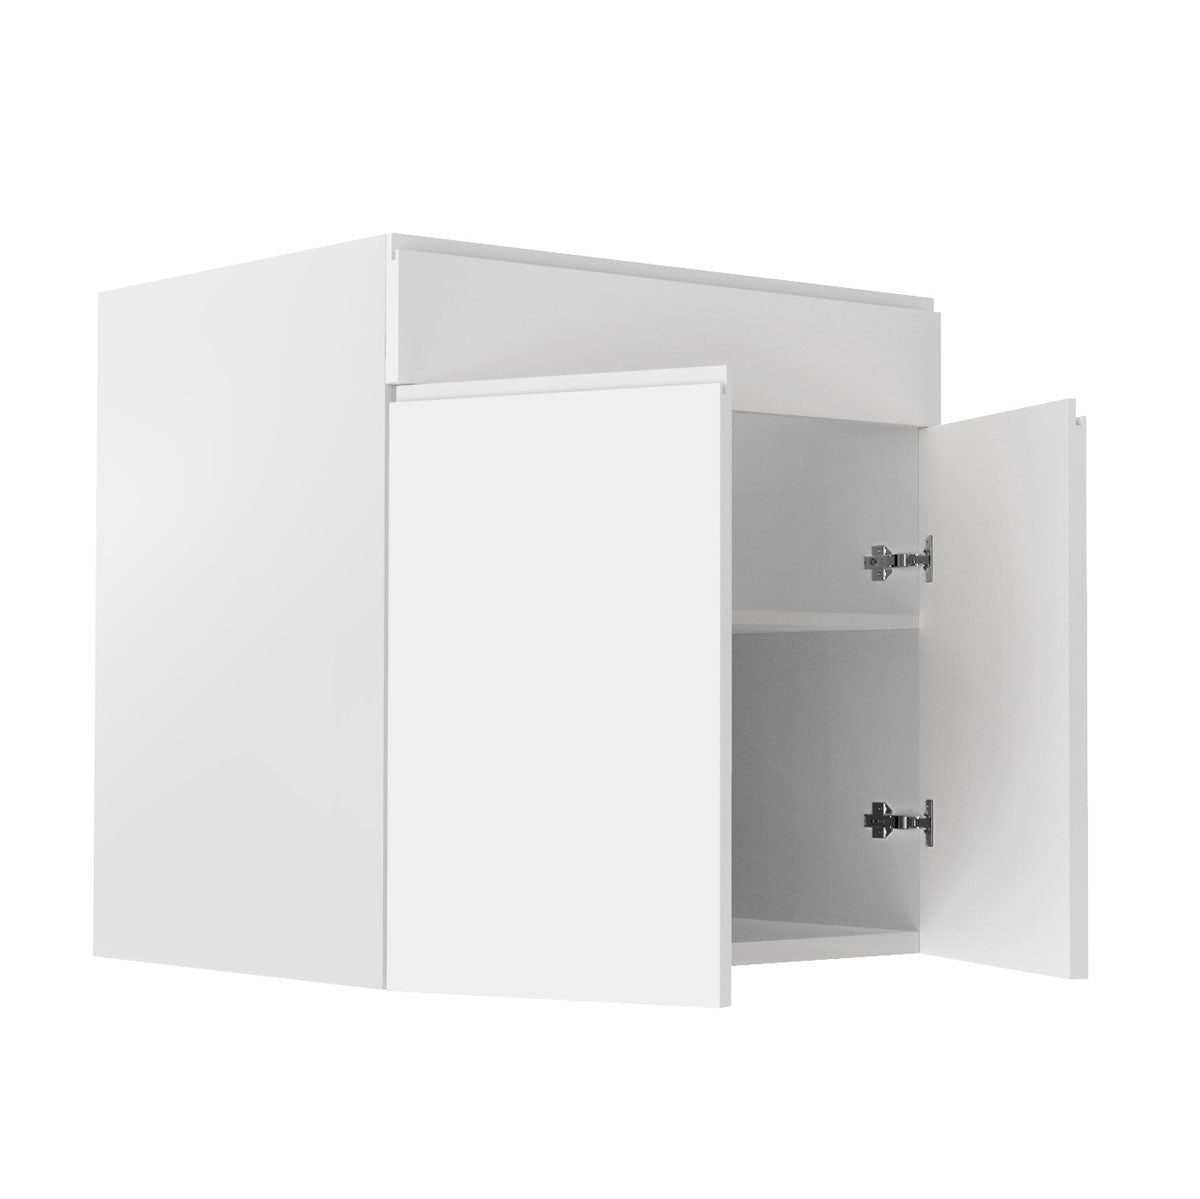 Sink Base Cabinet - RTA - Lacquer White | 30"W x 34.5"H x 23.8"D